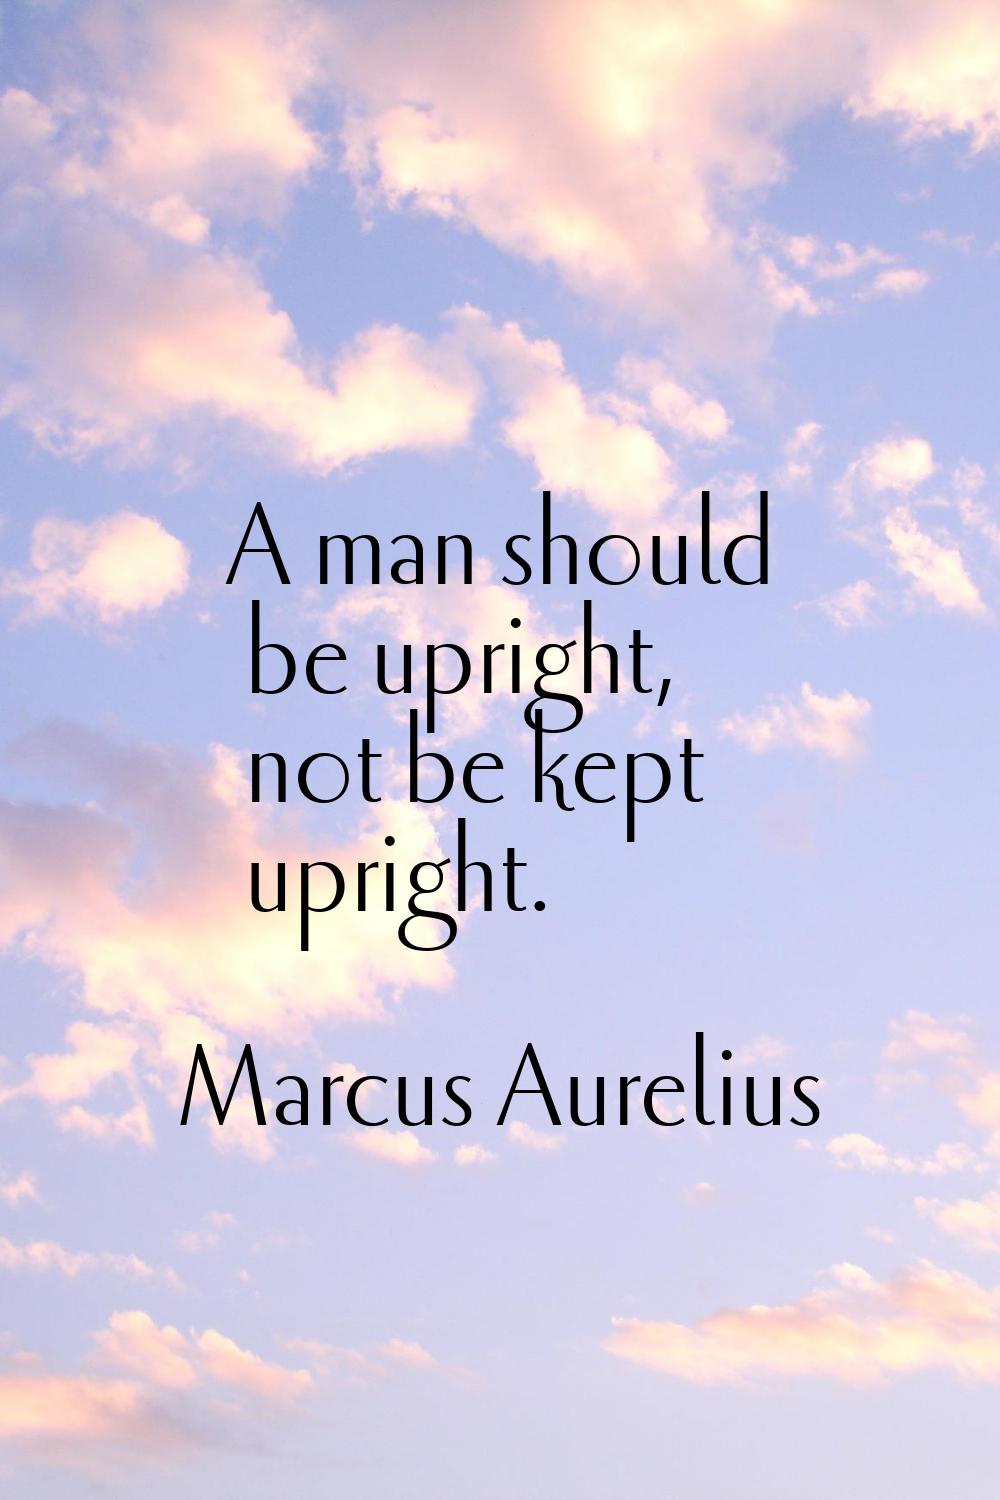 A man should be upright, not be kept upright.